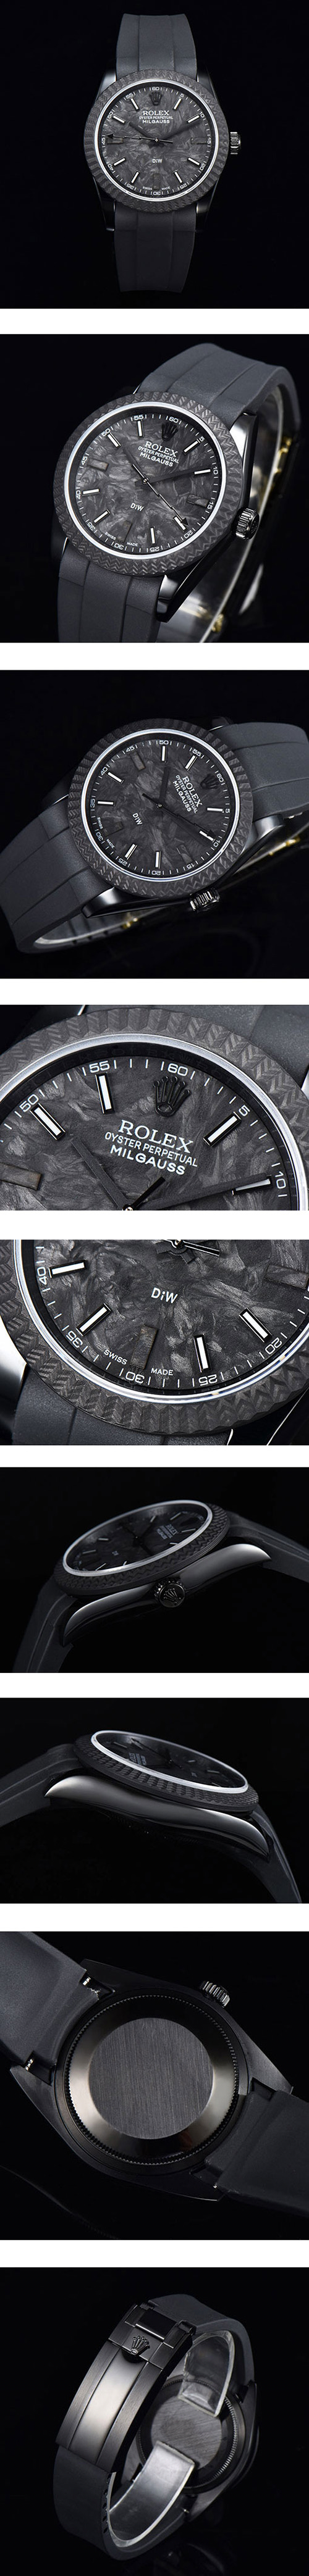 DIW腕時計を改造する、【36MM】ロレックスコピー時計 デイトジャスト126234